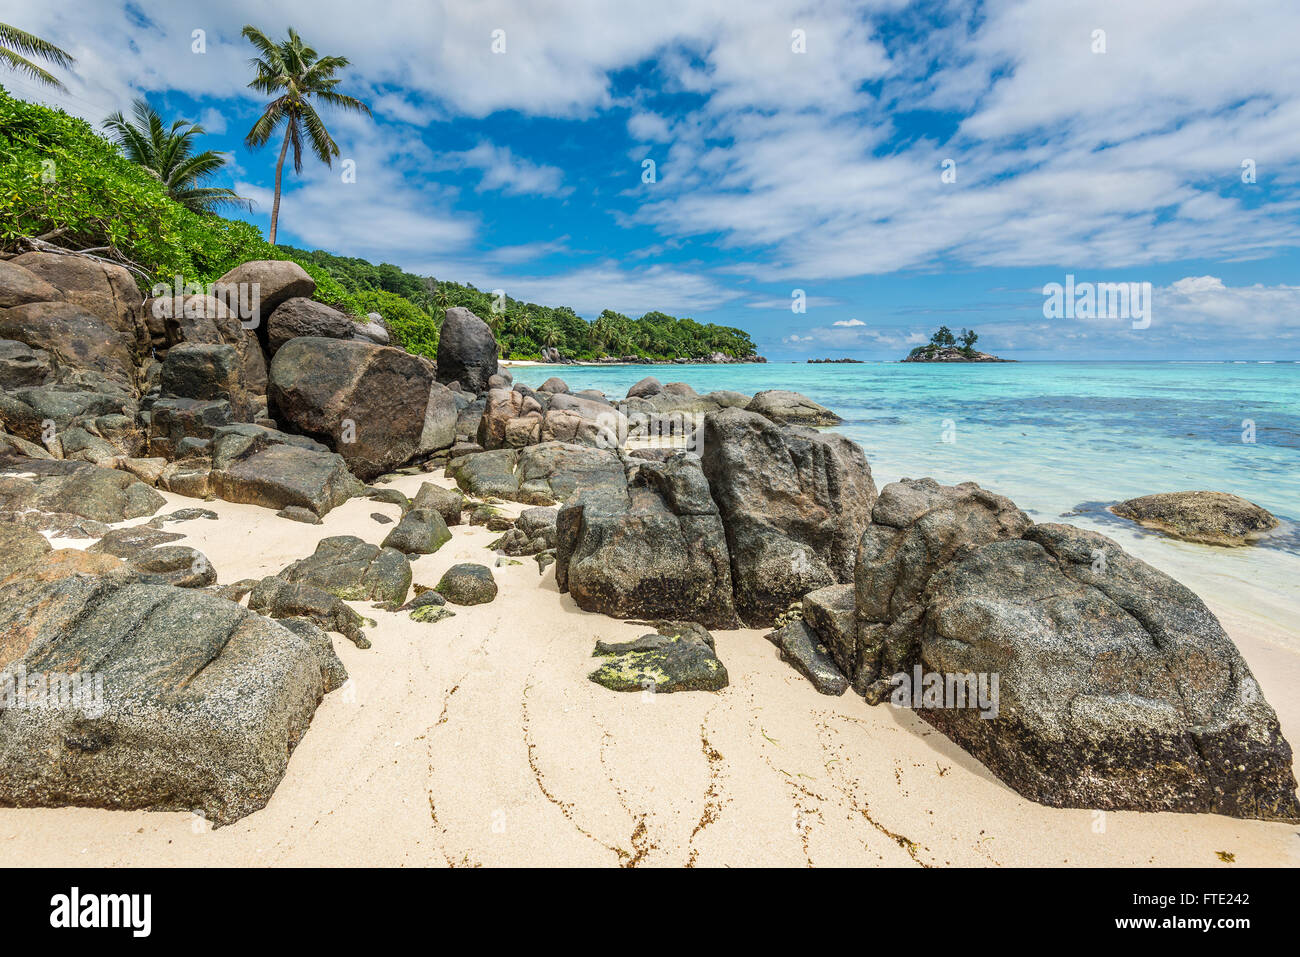 Seascape Seychelles avec les rochers de granit à l'avant-plan - Ance Royale plage dans l'île de Mahé, Seychelles Banque D'Images